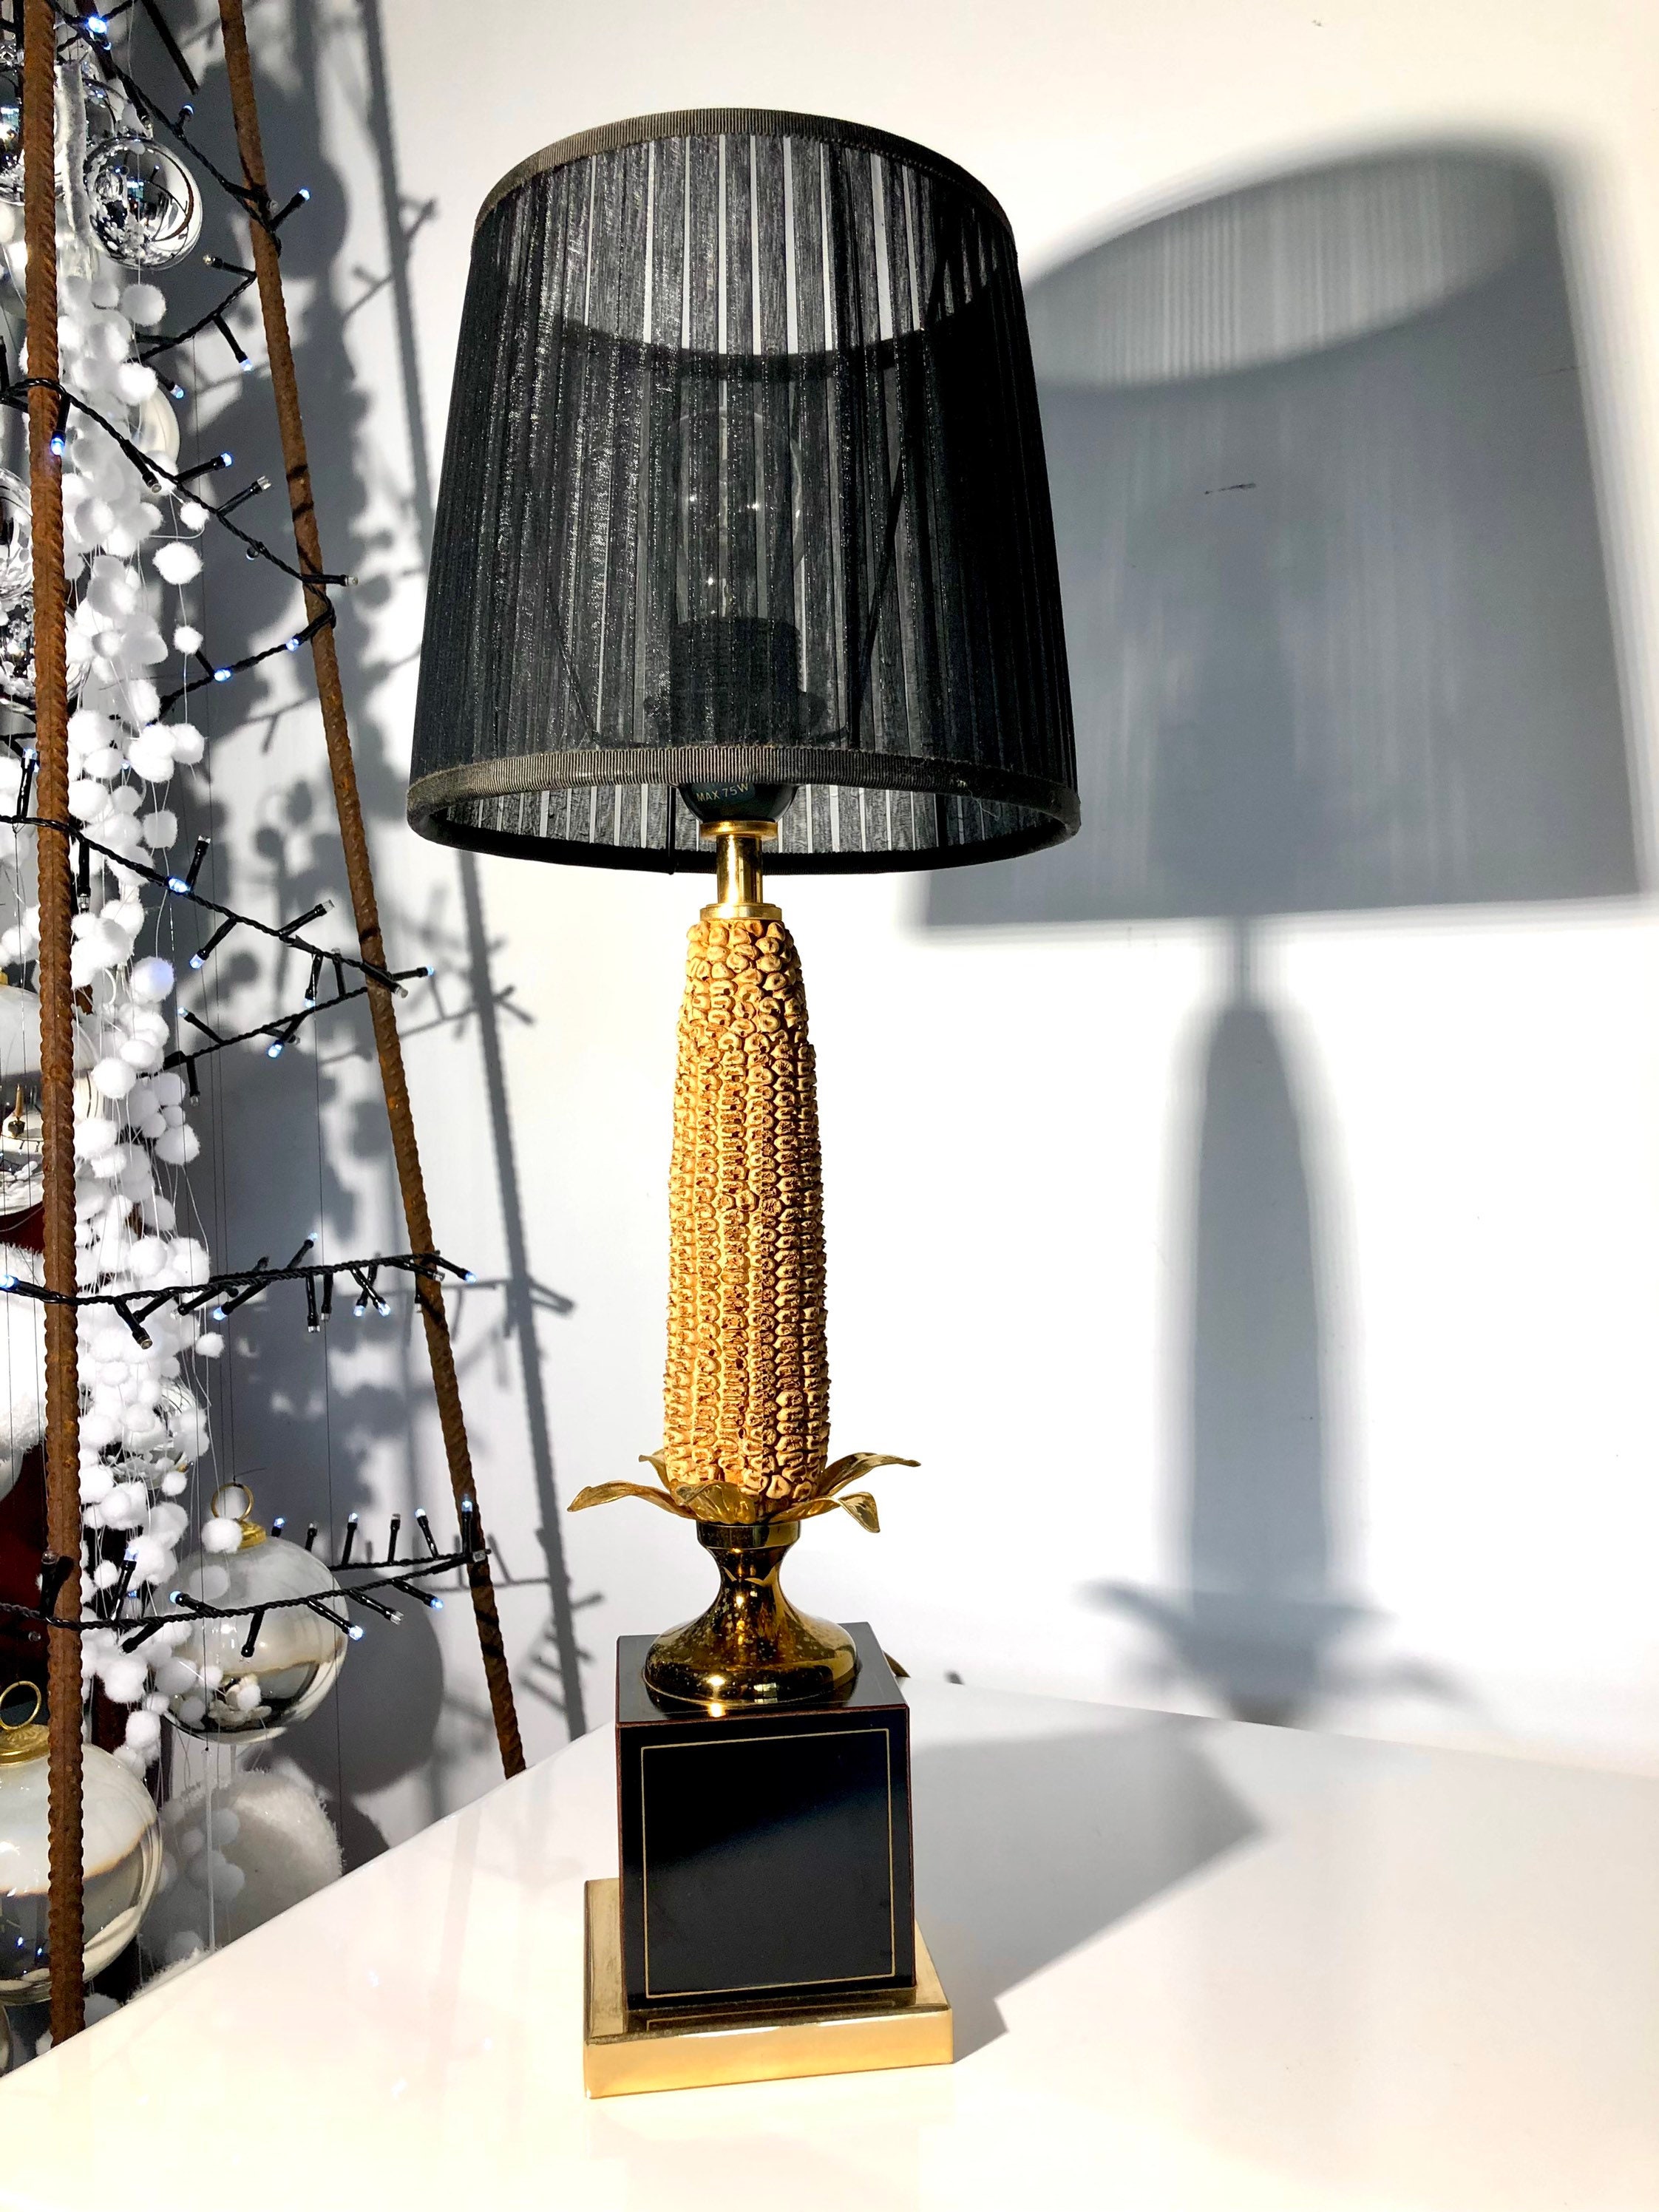 Rare Lampe Épis de Maïs Art Deco Moderniste 1930/Esprit Maison Charles